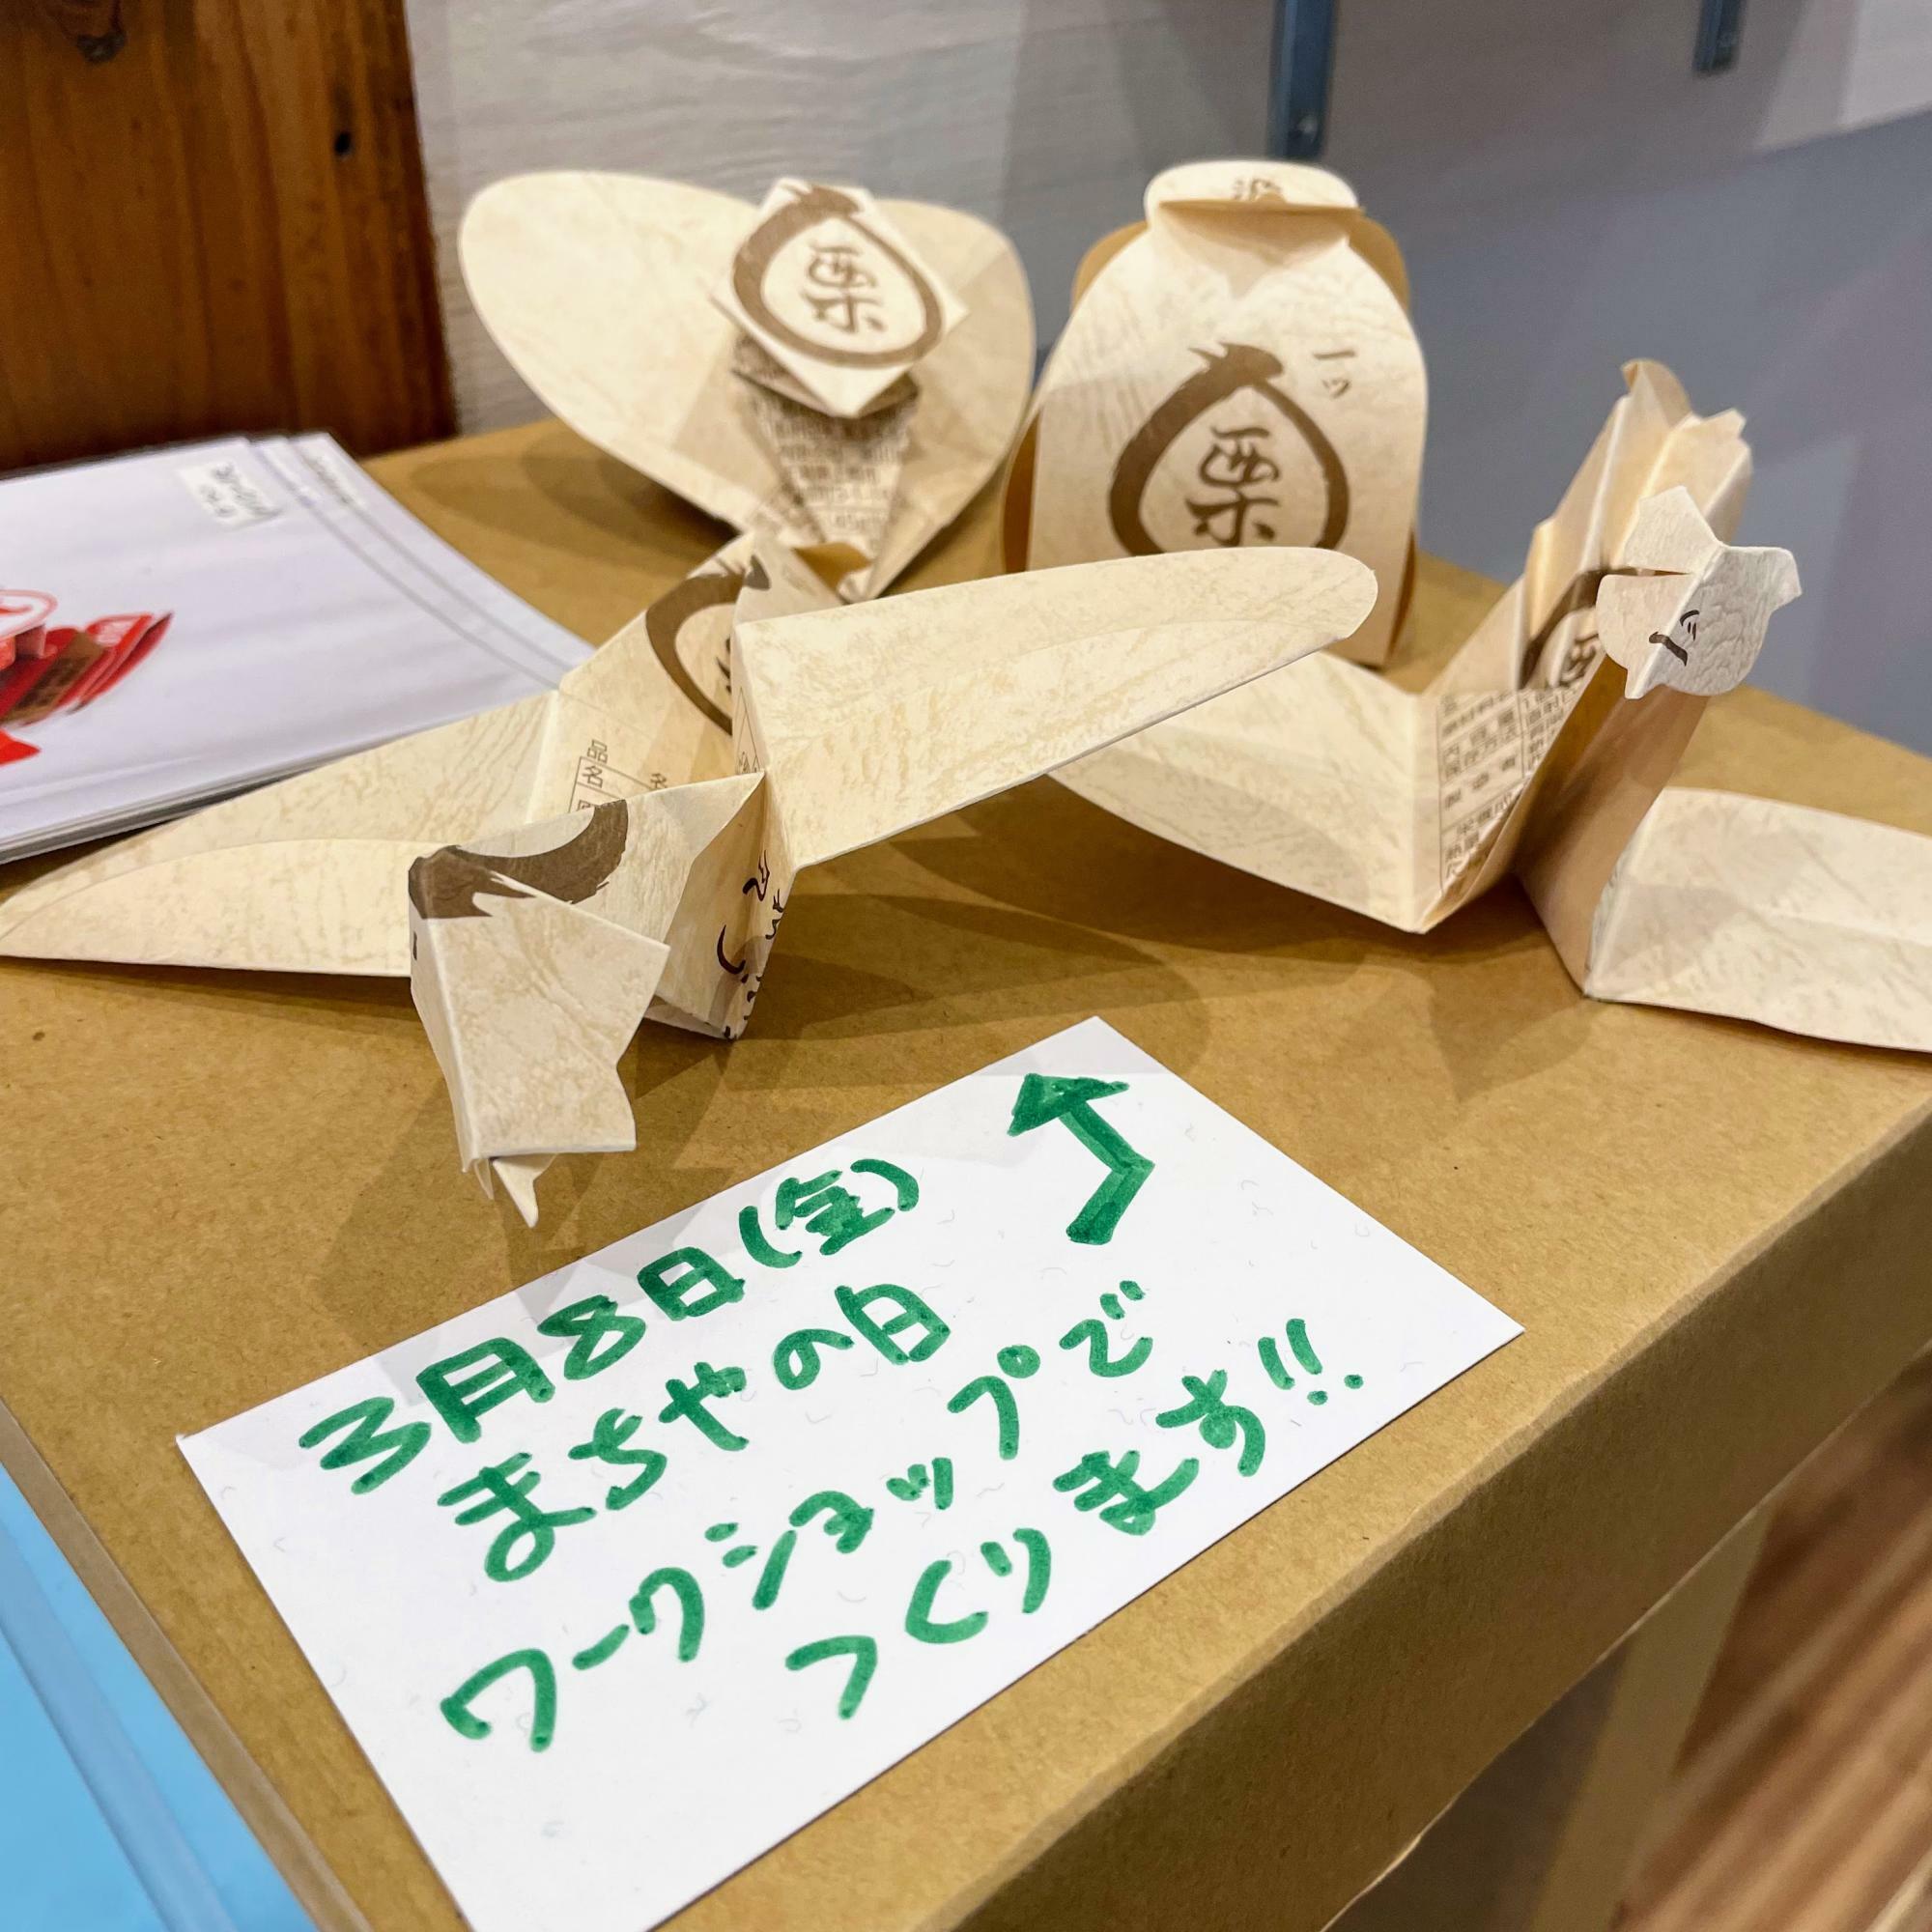 町家の日weekに合わせて、笹川菓子店の「一ツ栗」の包み紙を使った特別ワークショップも開催されました